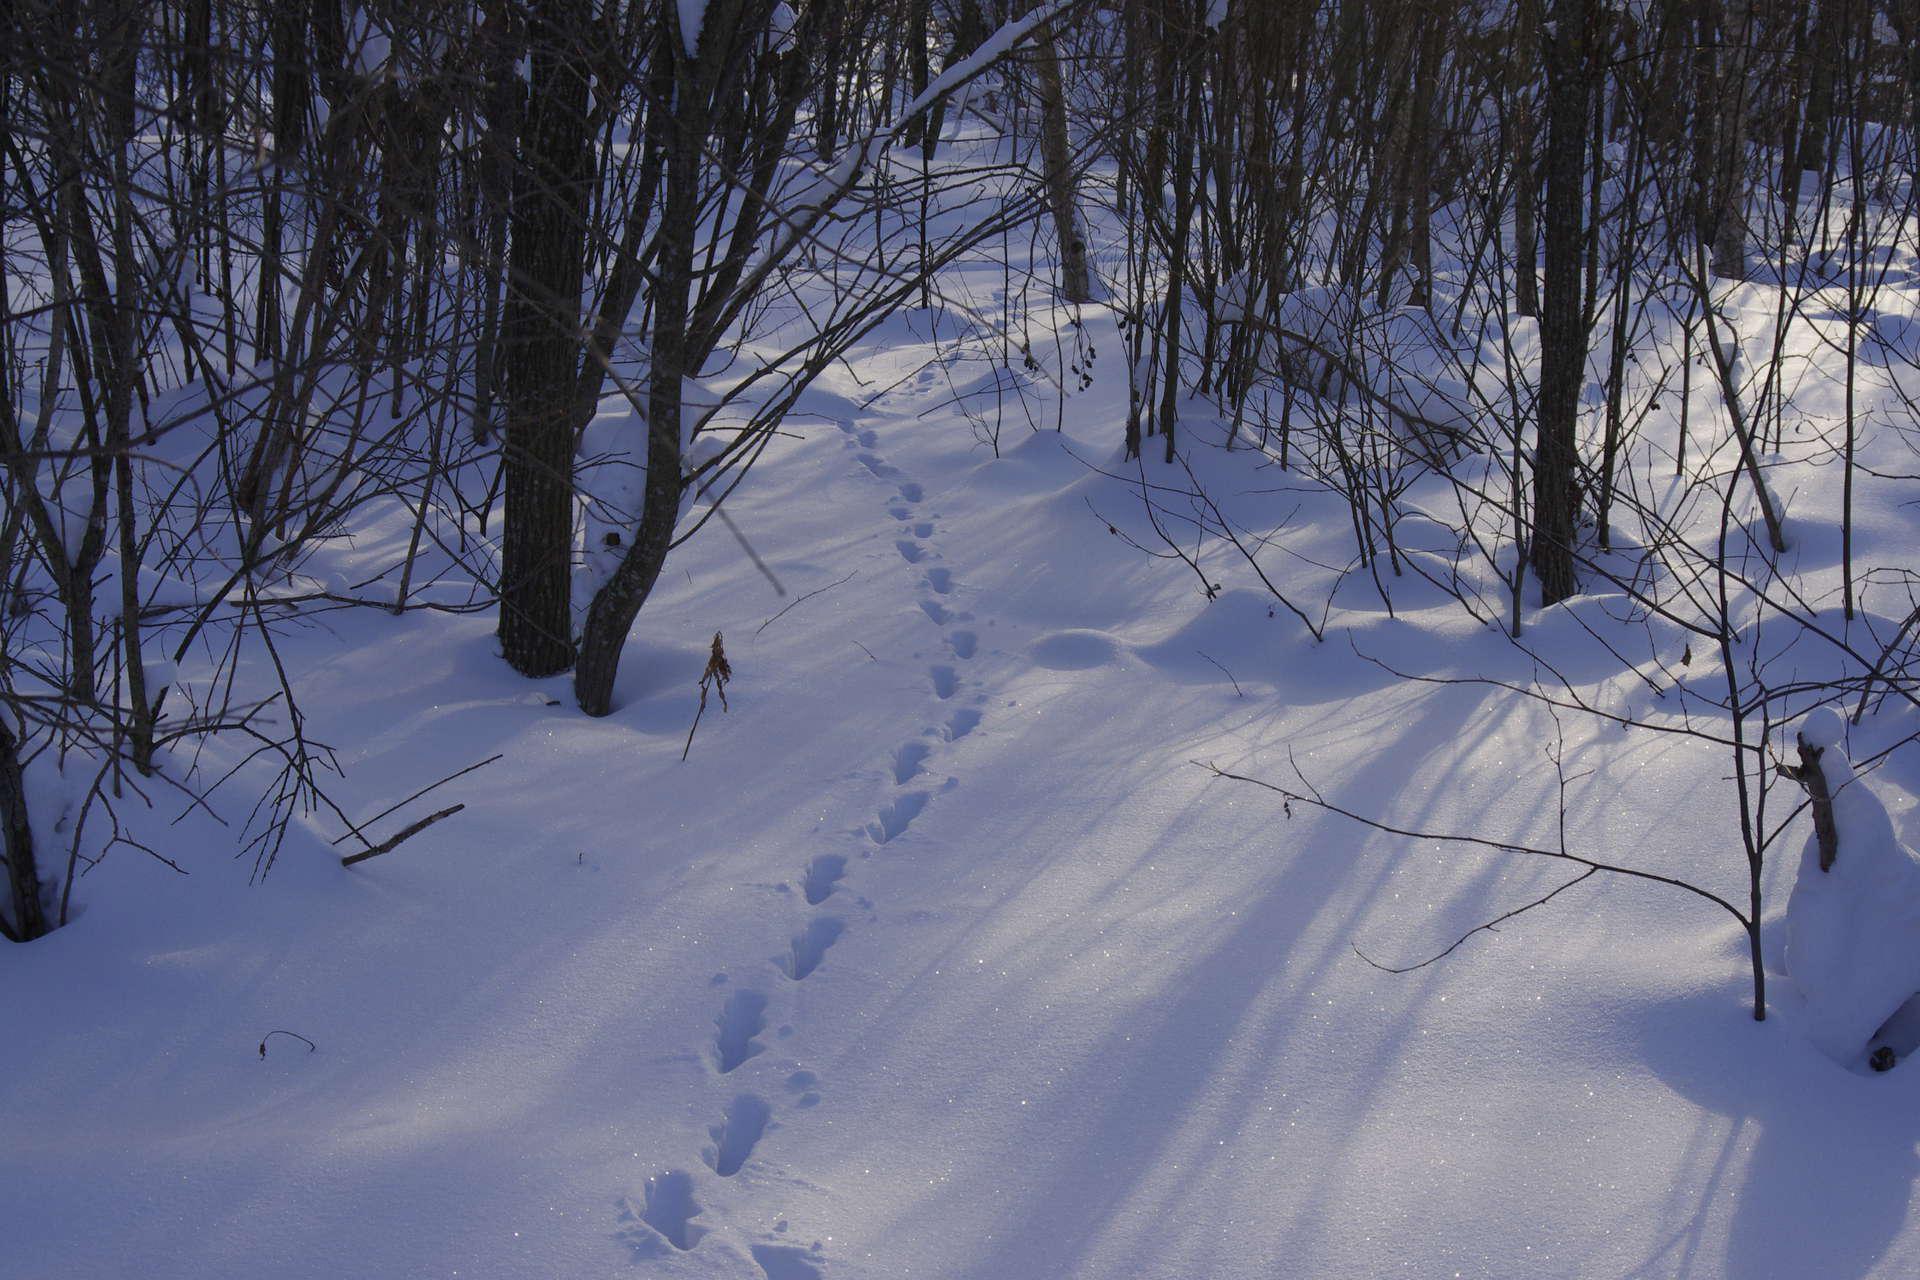 Заячьи и лисьи следы на снегу. Следы на снегу в лесу. Звериные тропы зимой. Следы зверей в зимнем лесу. Следы лисицы зимой.